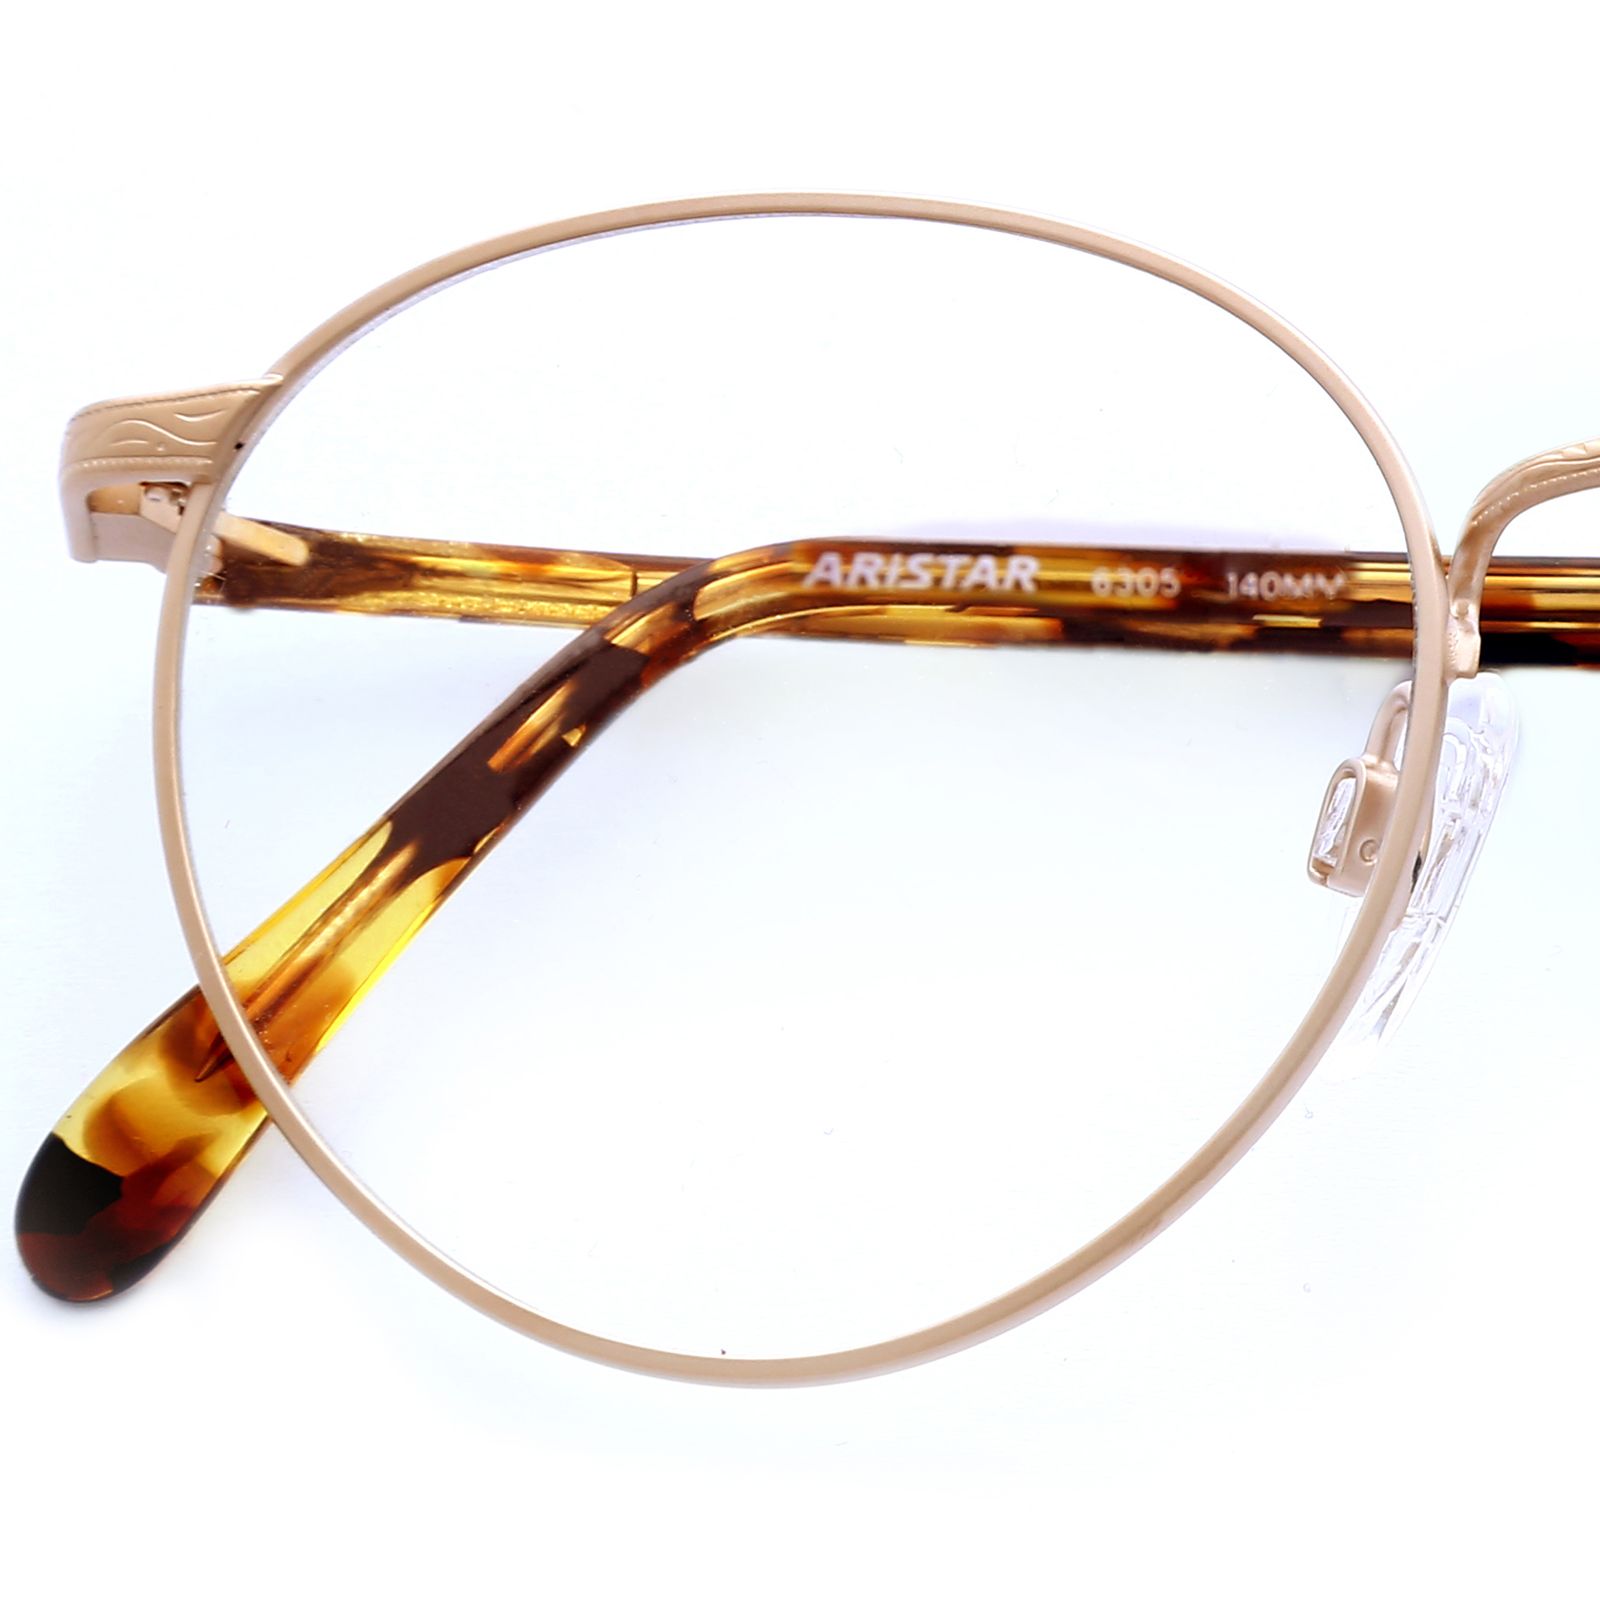 فریم عینک طبی آریستار مدل 6305 -  - 2